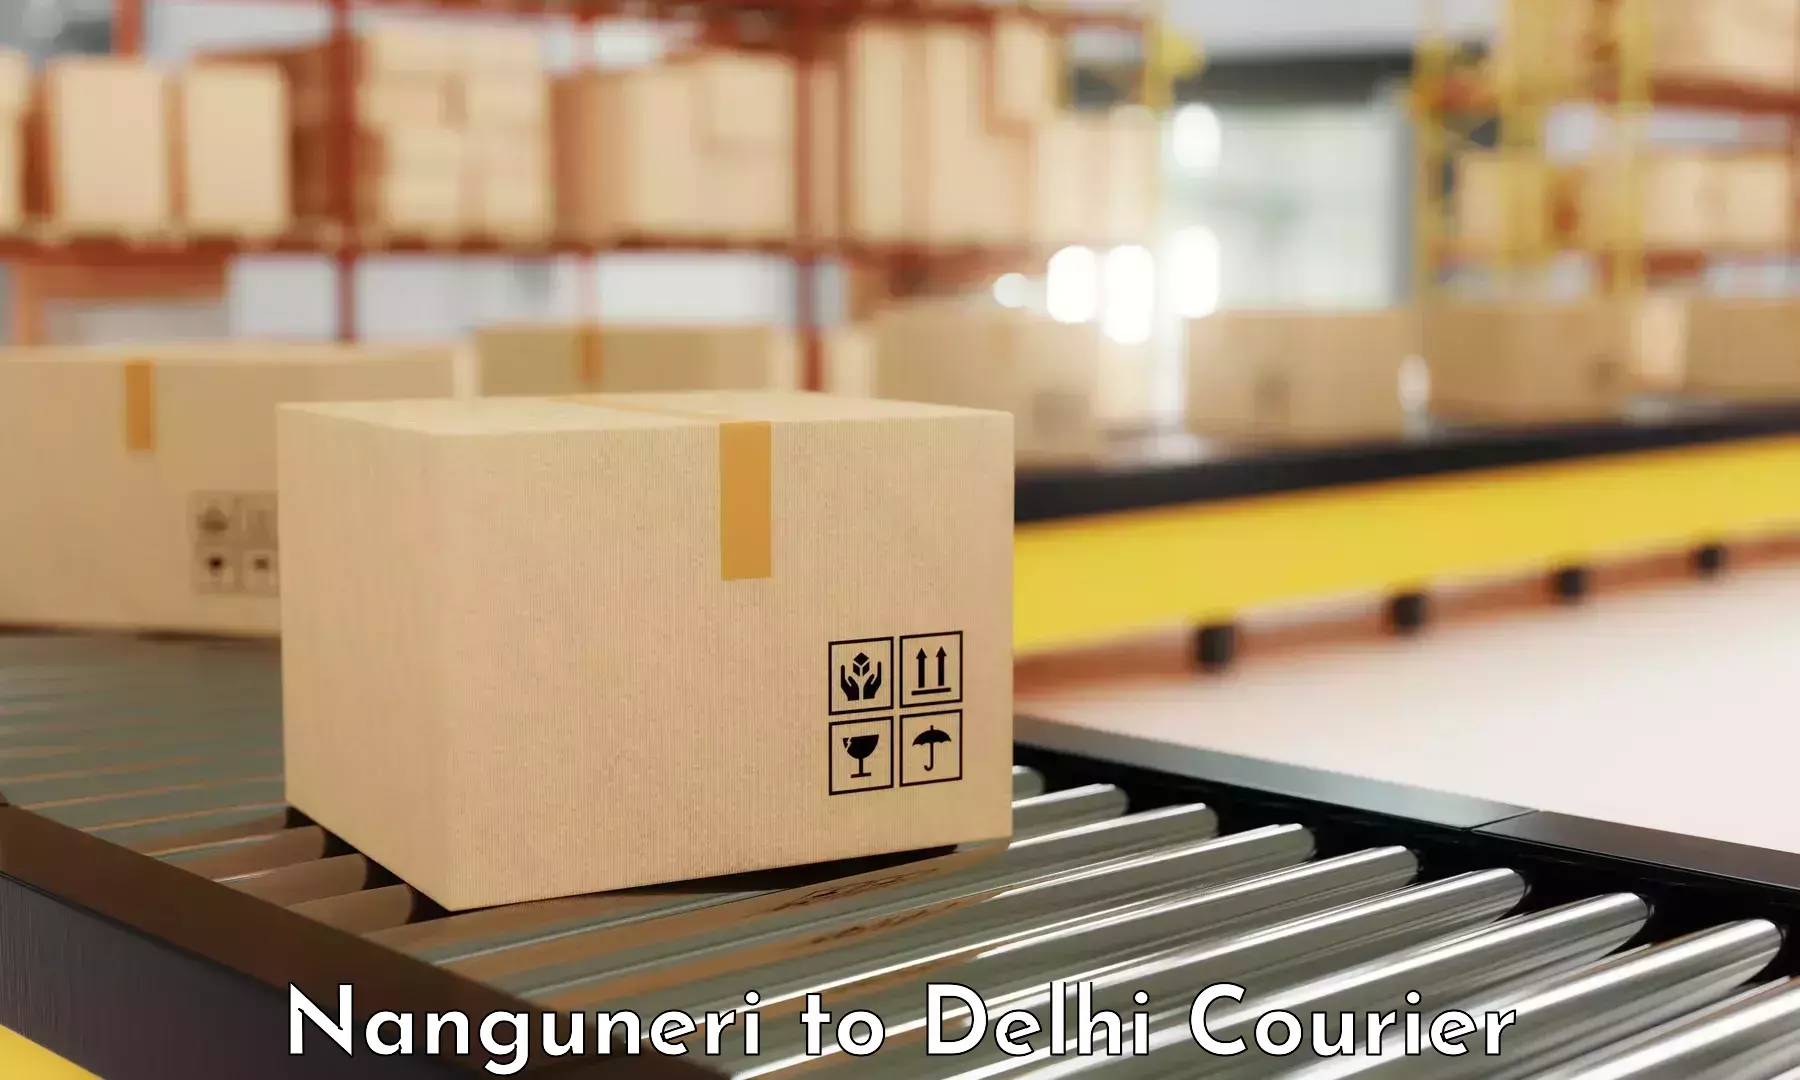 Express delivery solutions Nanguneri to East Delhi